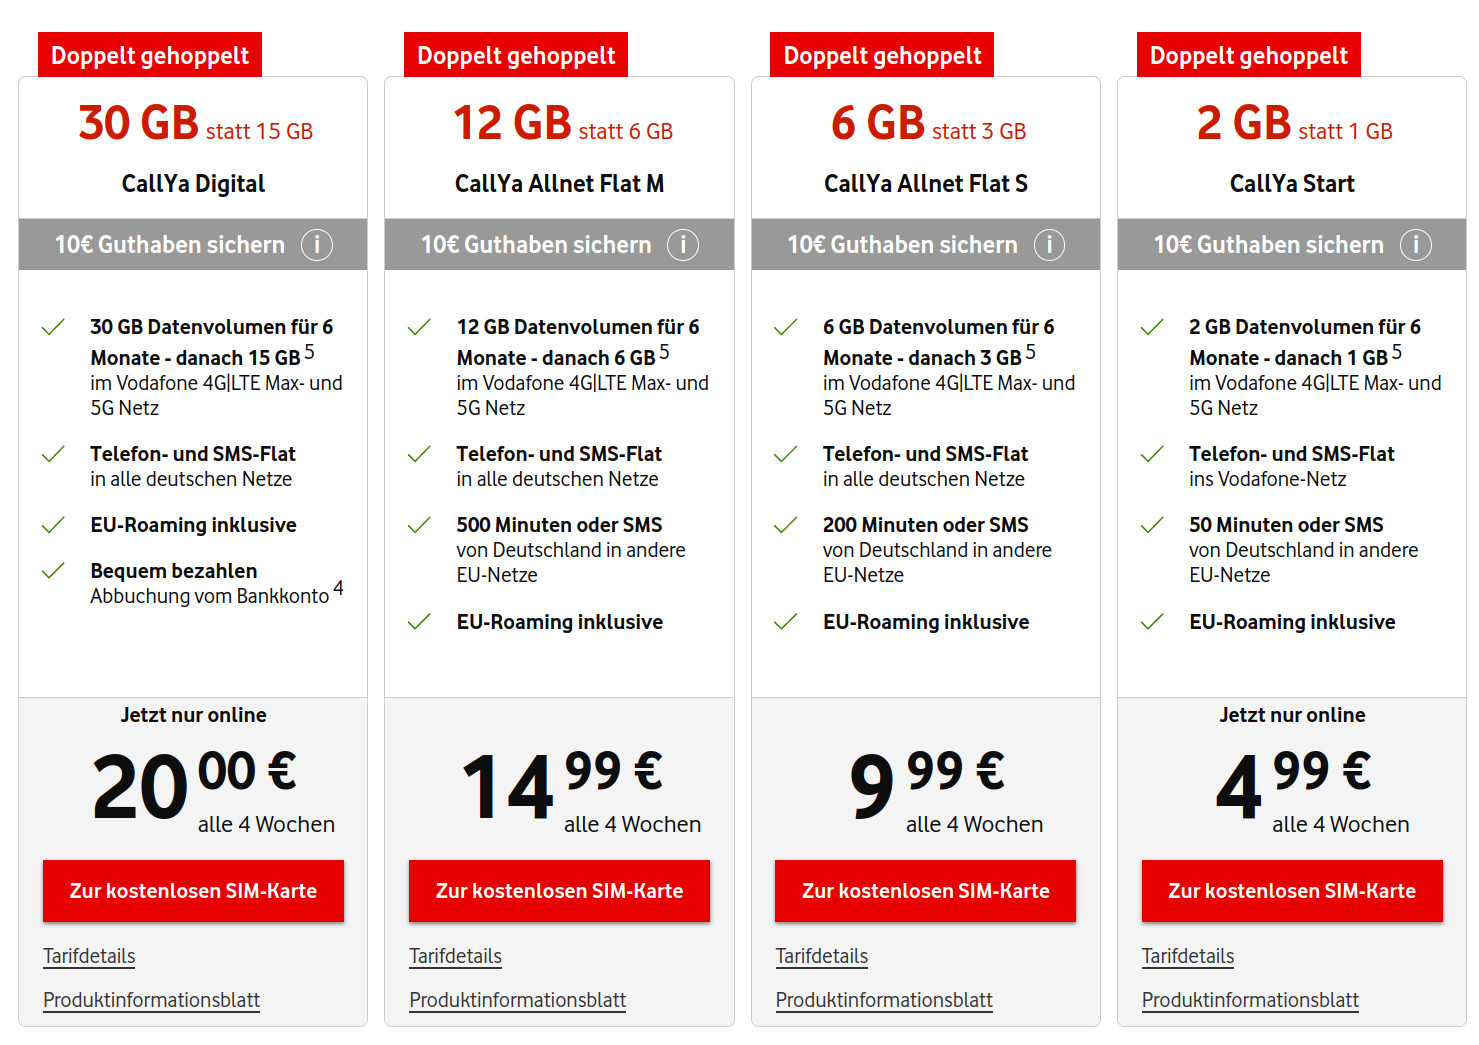 Vodafone Prepaid Jahrestarif: Osteraktion mit doppeltem Datenvolumen